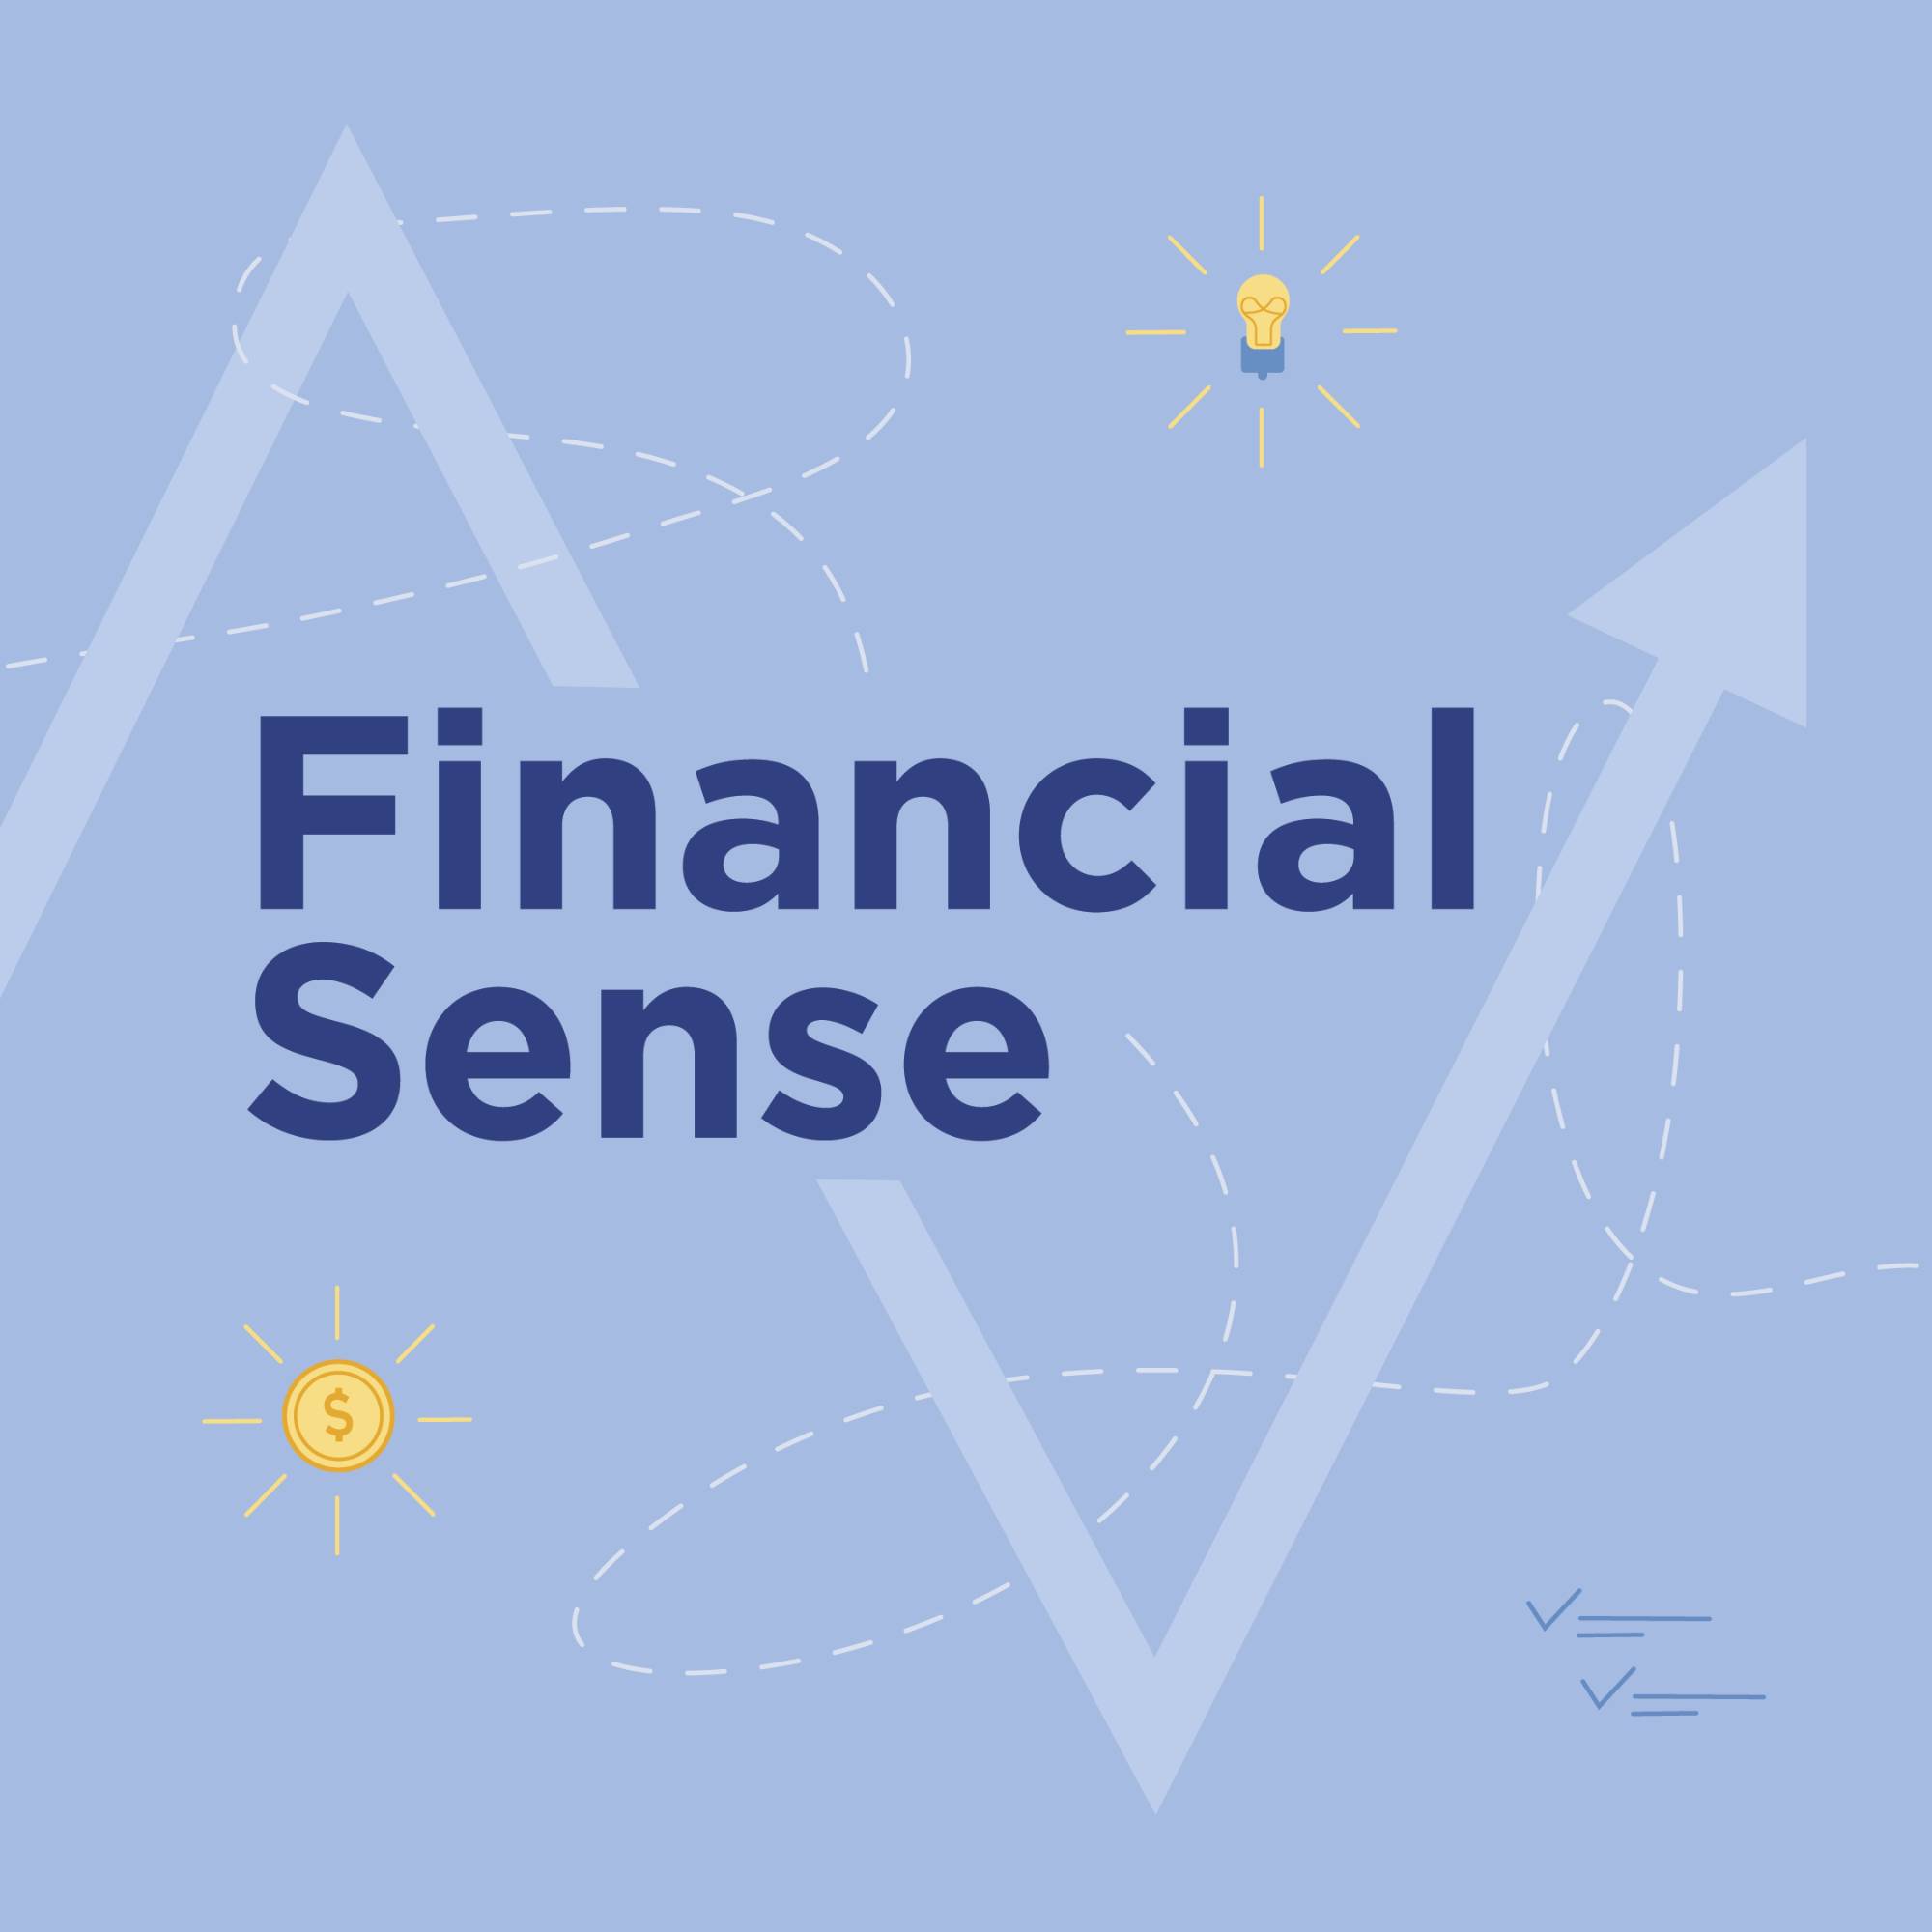 Financial Sense